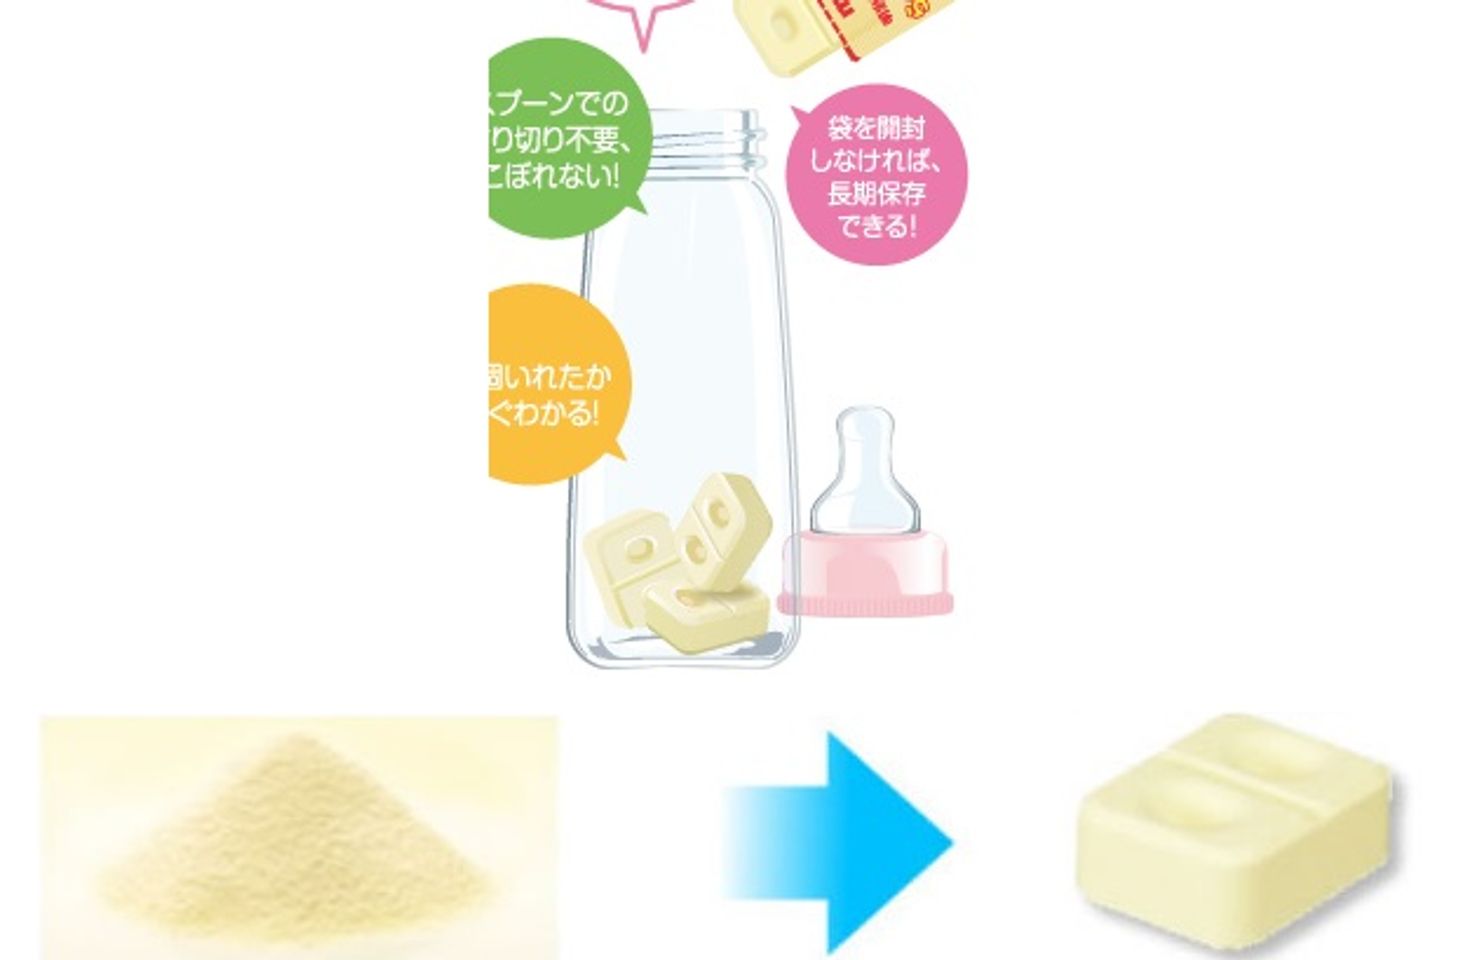 Sữa Meiji số 9 dạng thanh tiện lợi, an toàn cho bé